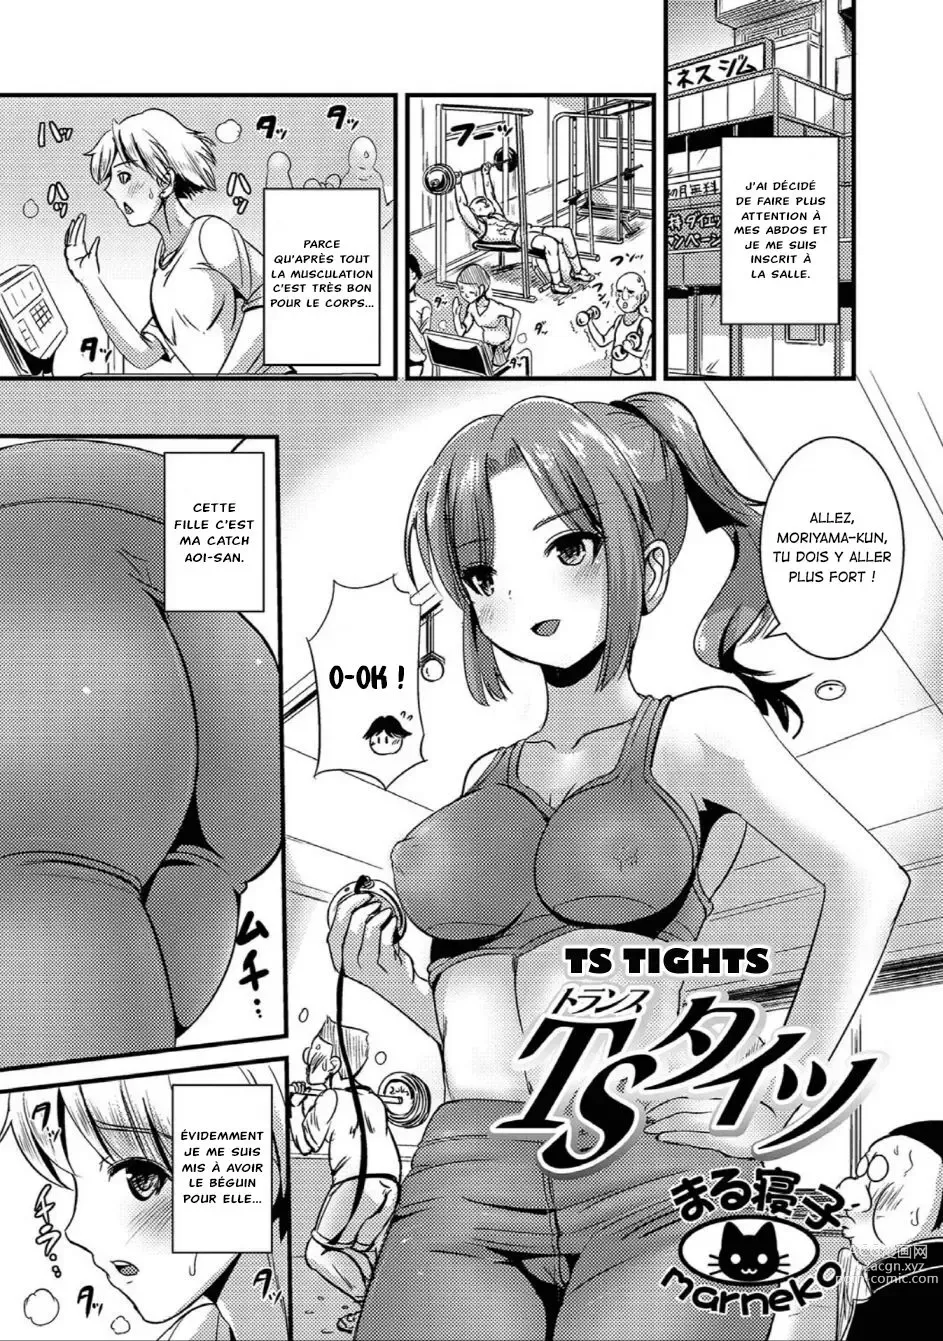 Page 1 of manga TS Tights